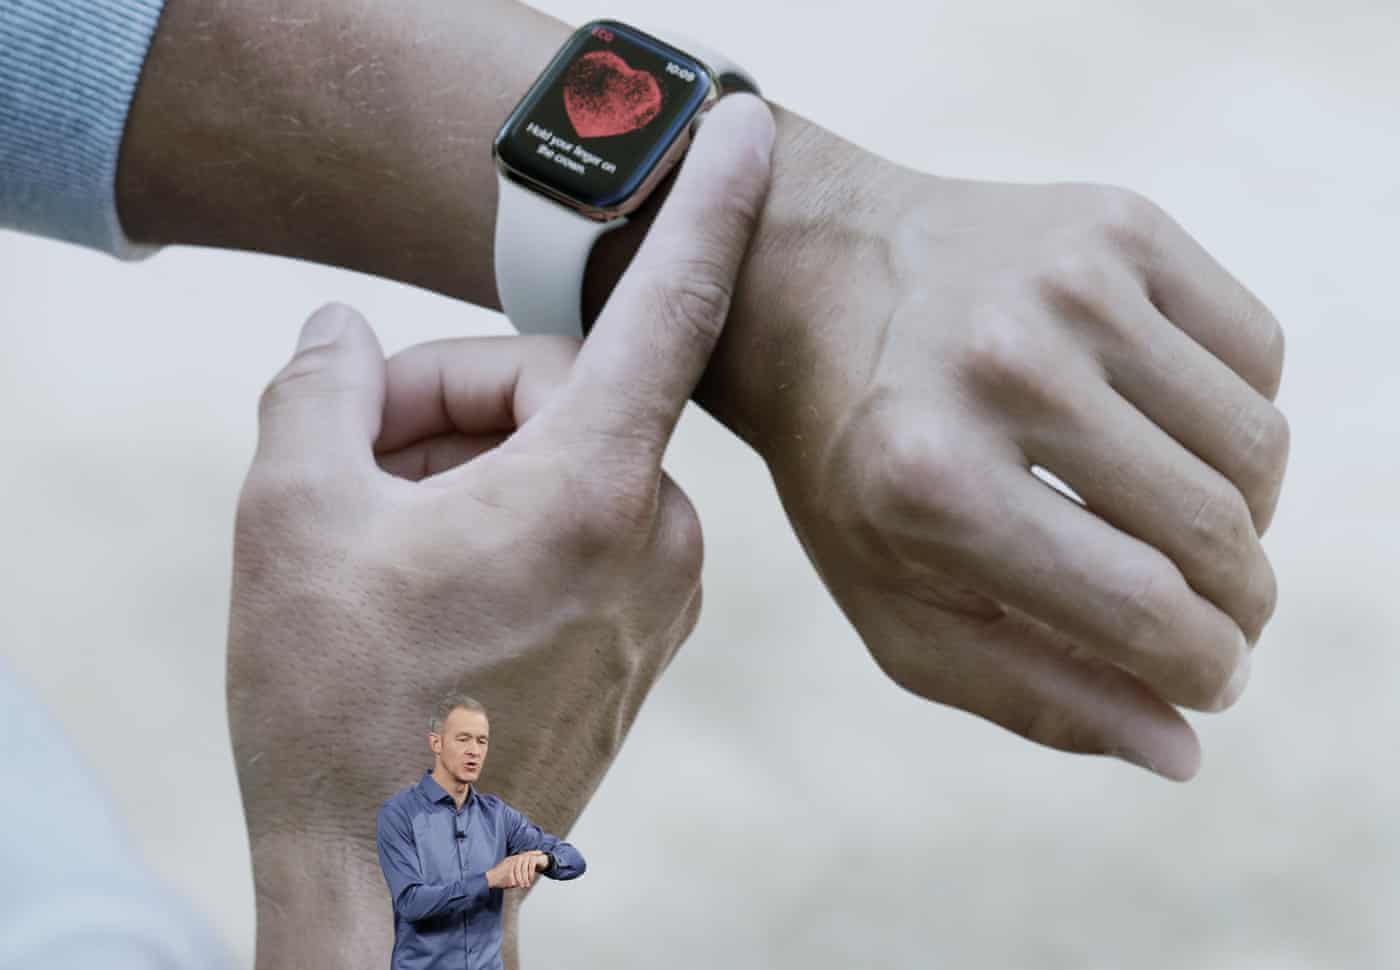 Williams表示，Apple Watch系列4的电池续航能力与此前的一样，也为18个小时。系列4共有铝银色、金色和太空灰三种颜色可选，9月14日起接受预订，从9月21日开始全面发售，起售价399美元，携带通话功能的系列4售价499美元，系列3的售价下调至279美元。